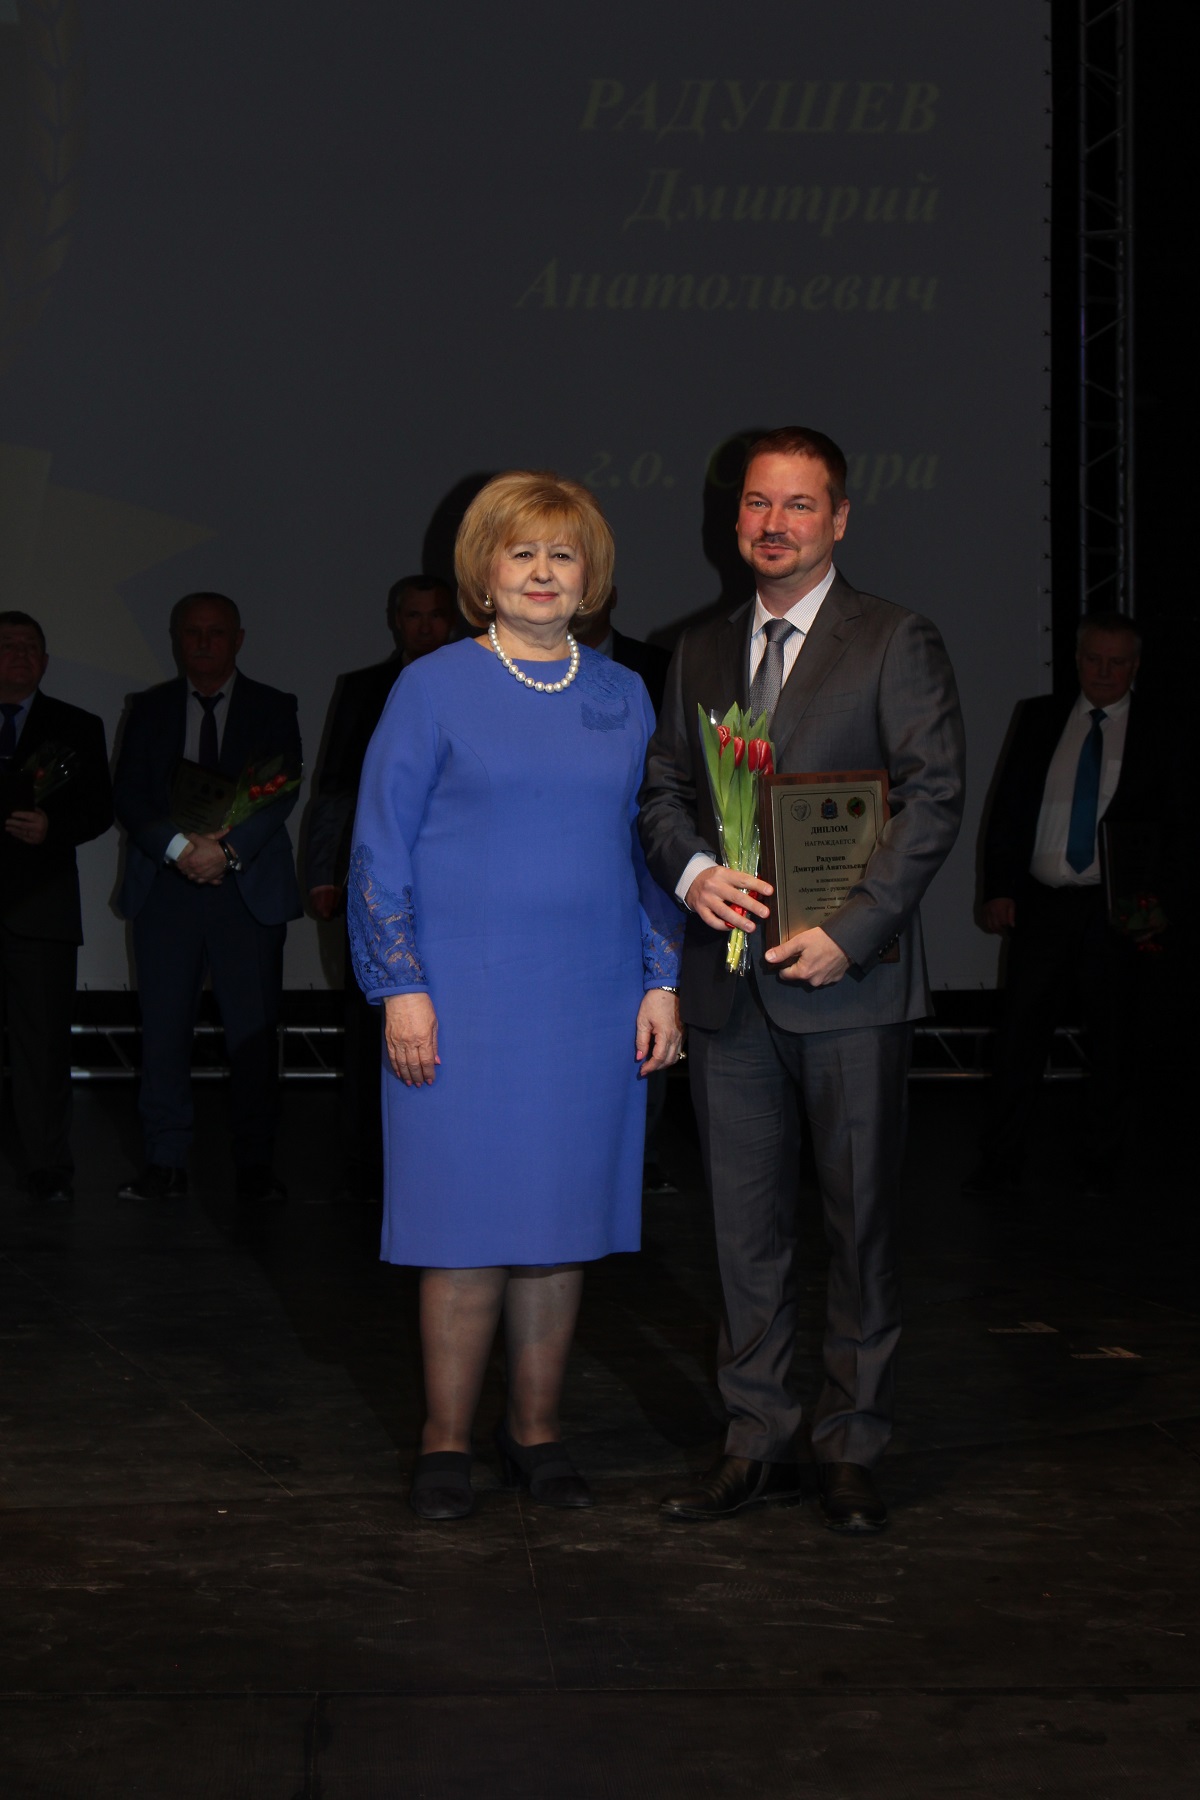 Уполномоченный по правам человека в Самарской области приняла участие в церемонии награждения победителей акции «Мужчина Самарской области — 2019 года»